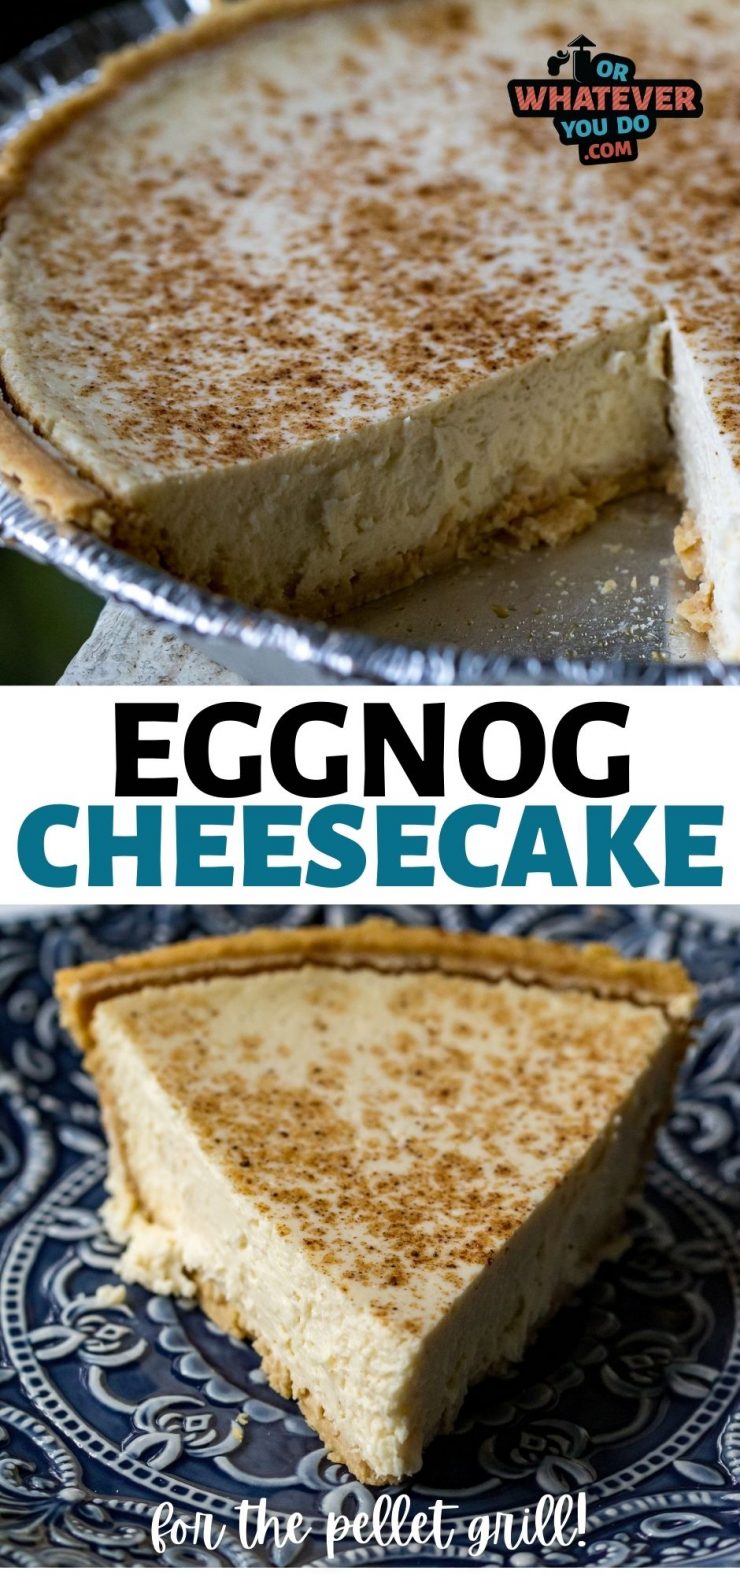 Traeger Eggnog Cheesecake